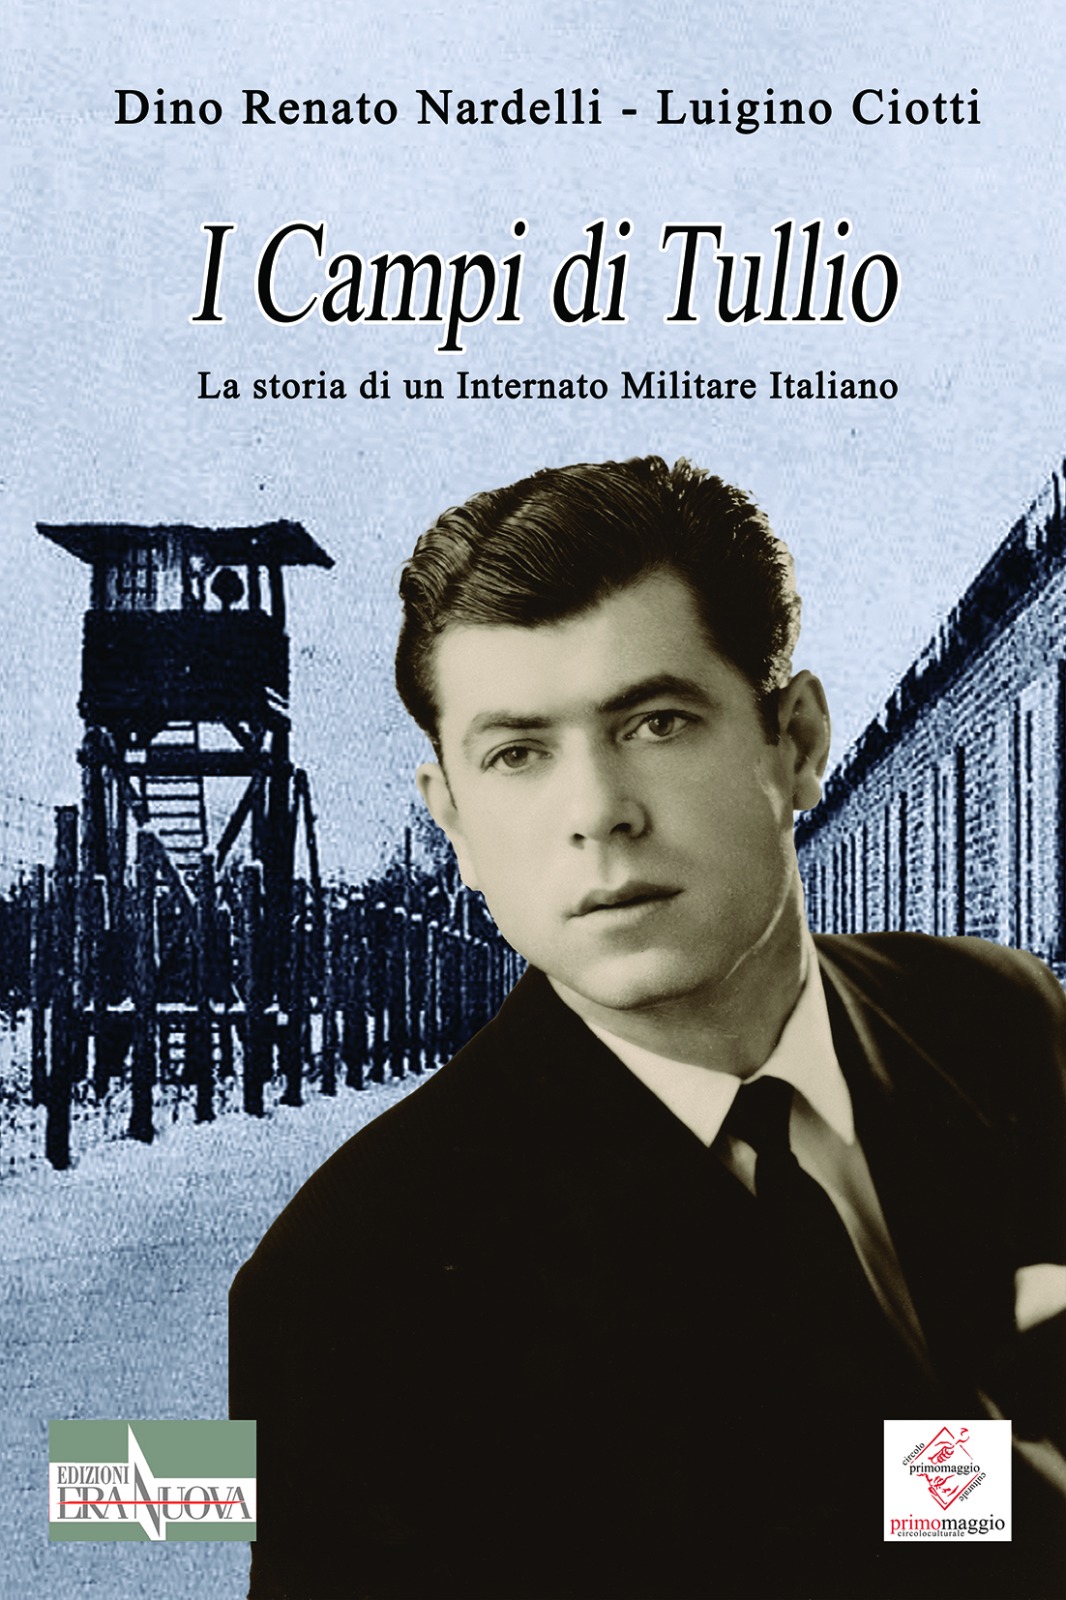 La copertina de "I campi di Tullio"